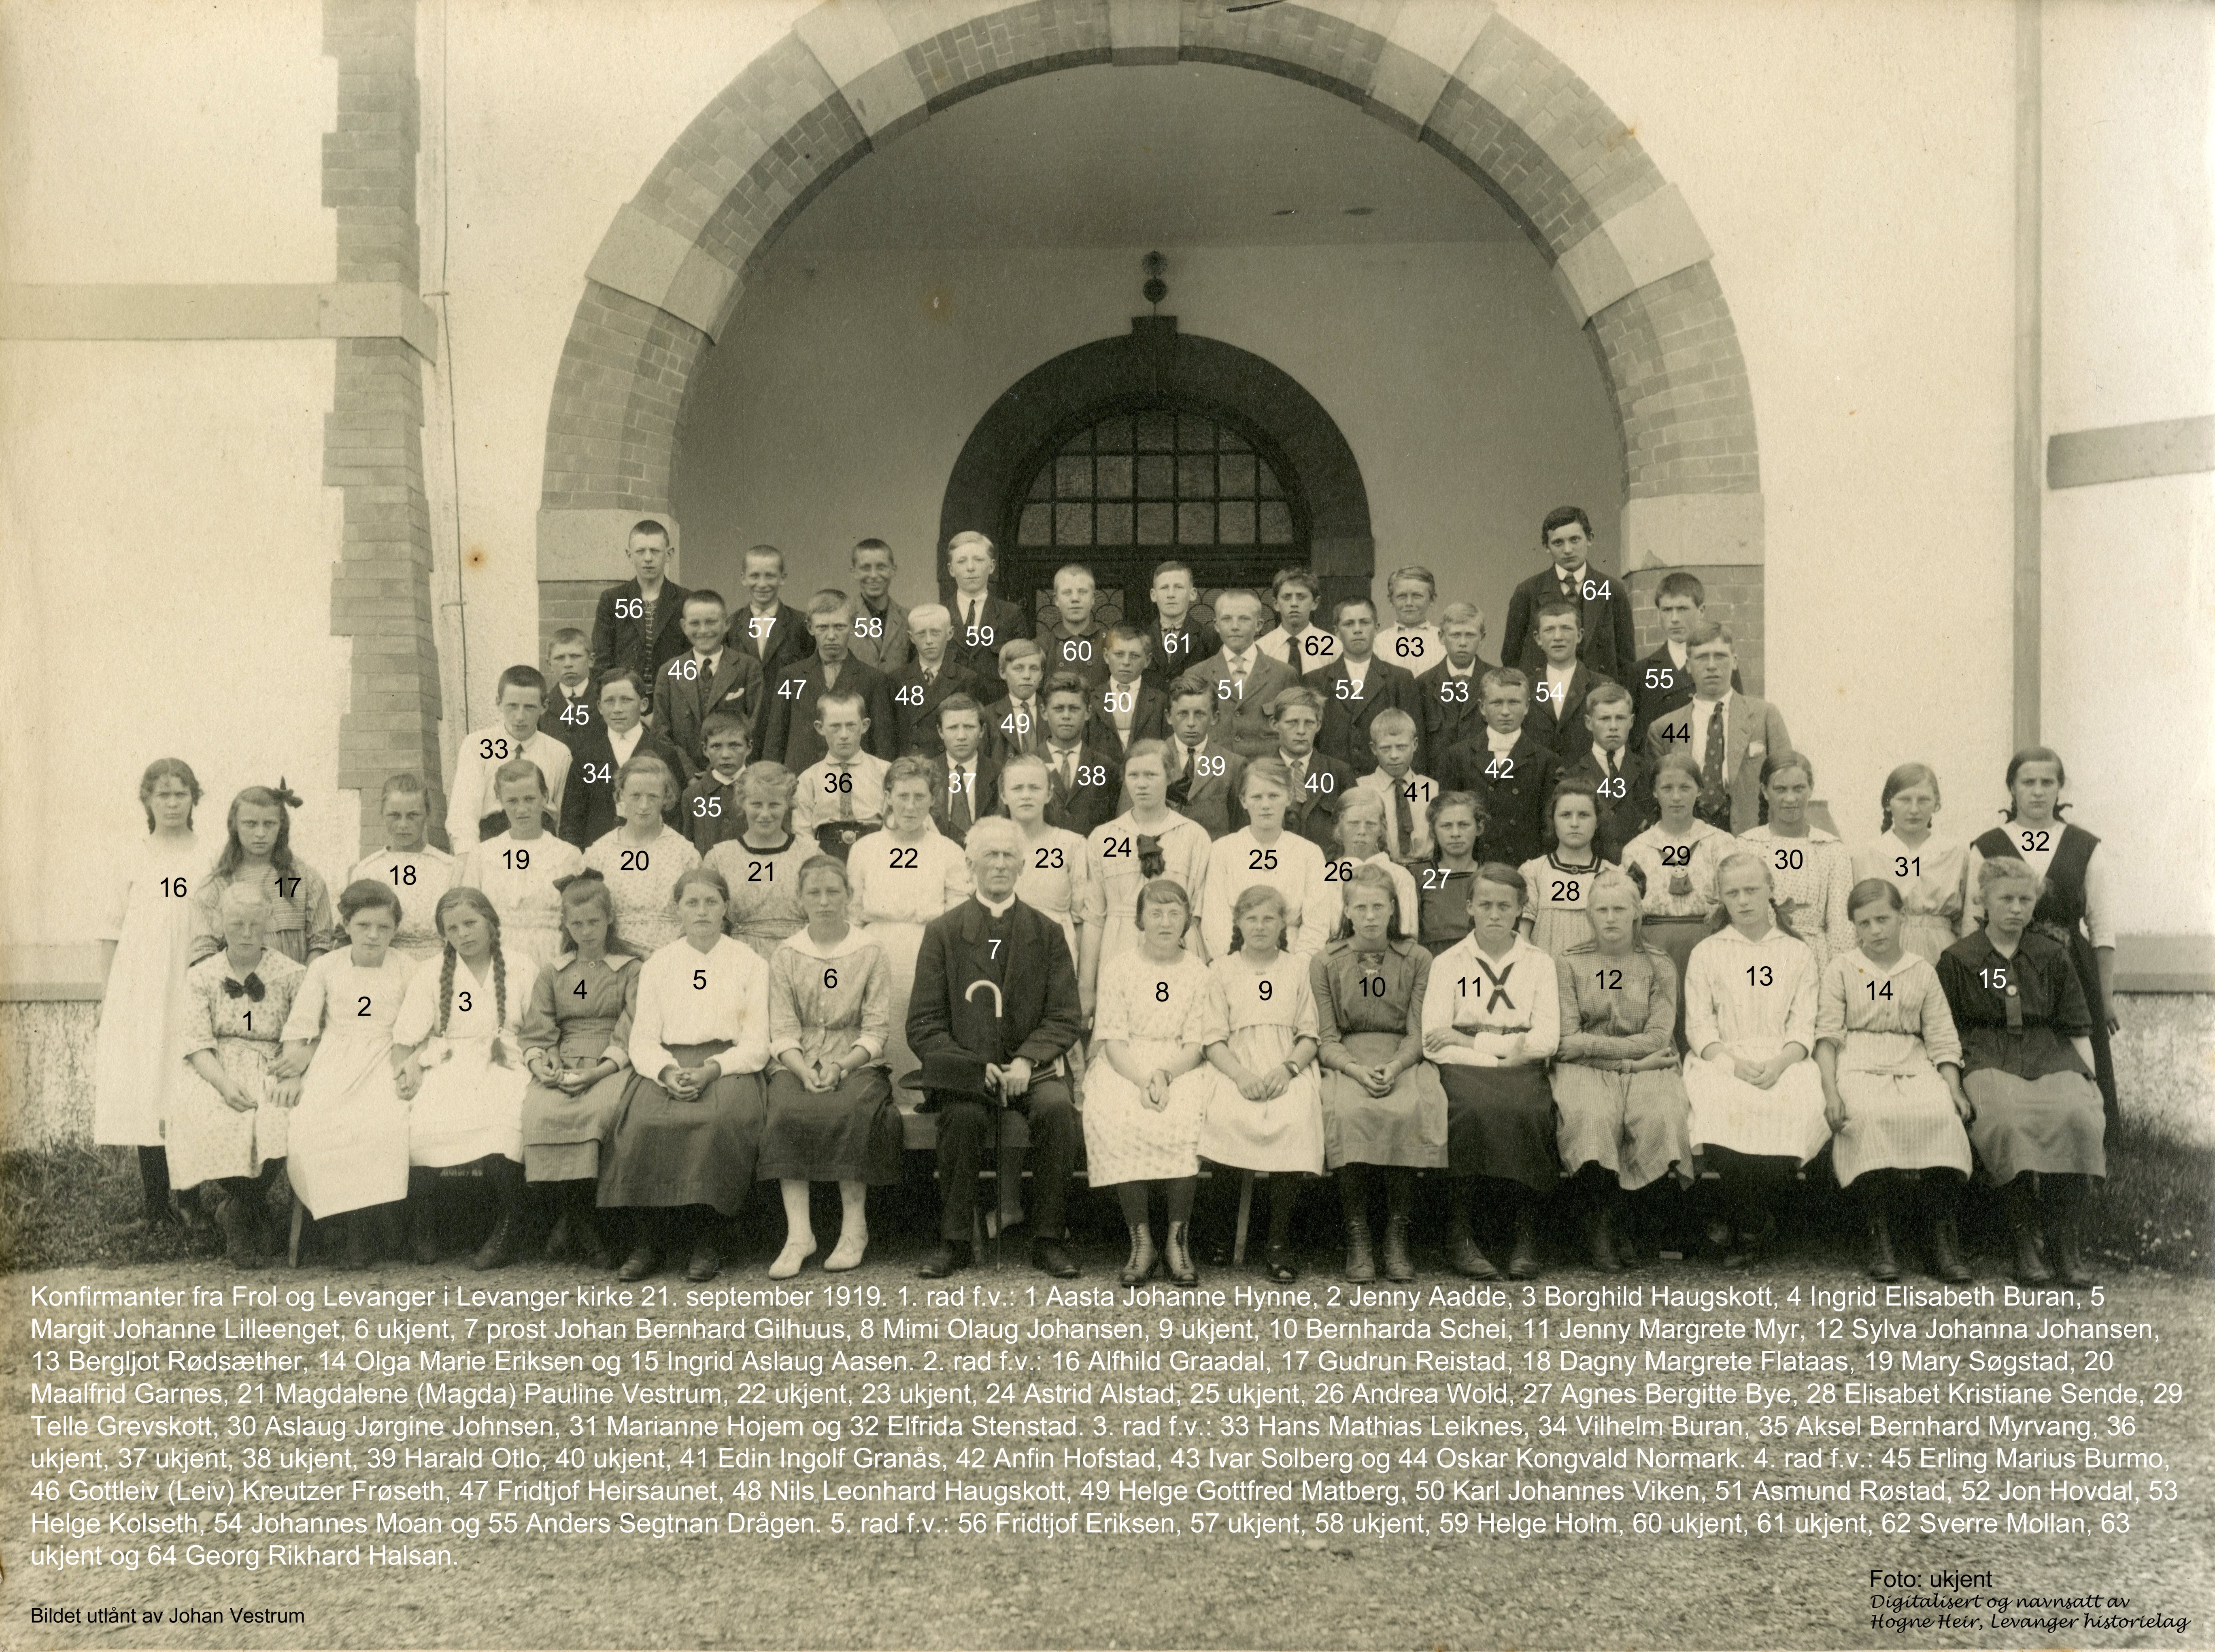 Konfirmanter fra Frol og Levanger i Levanger kirke 21. september 1919